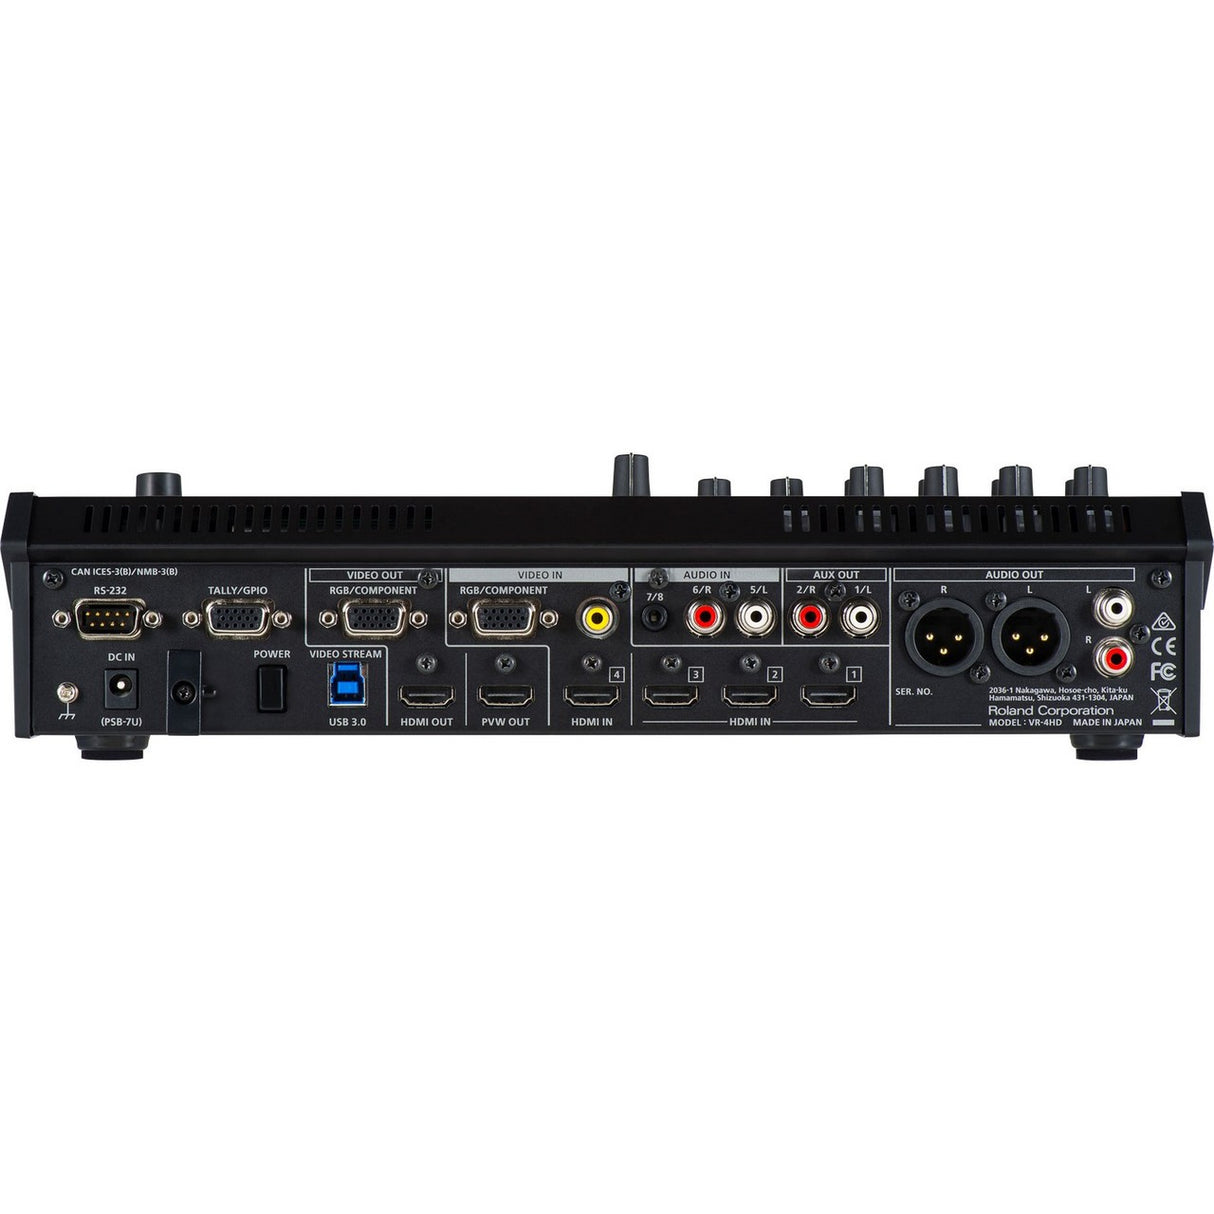 Roland VR-4HD | USB 3.0 Web Streaming HD AV Mixer